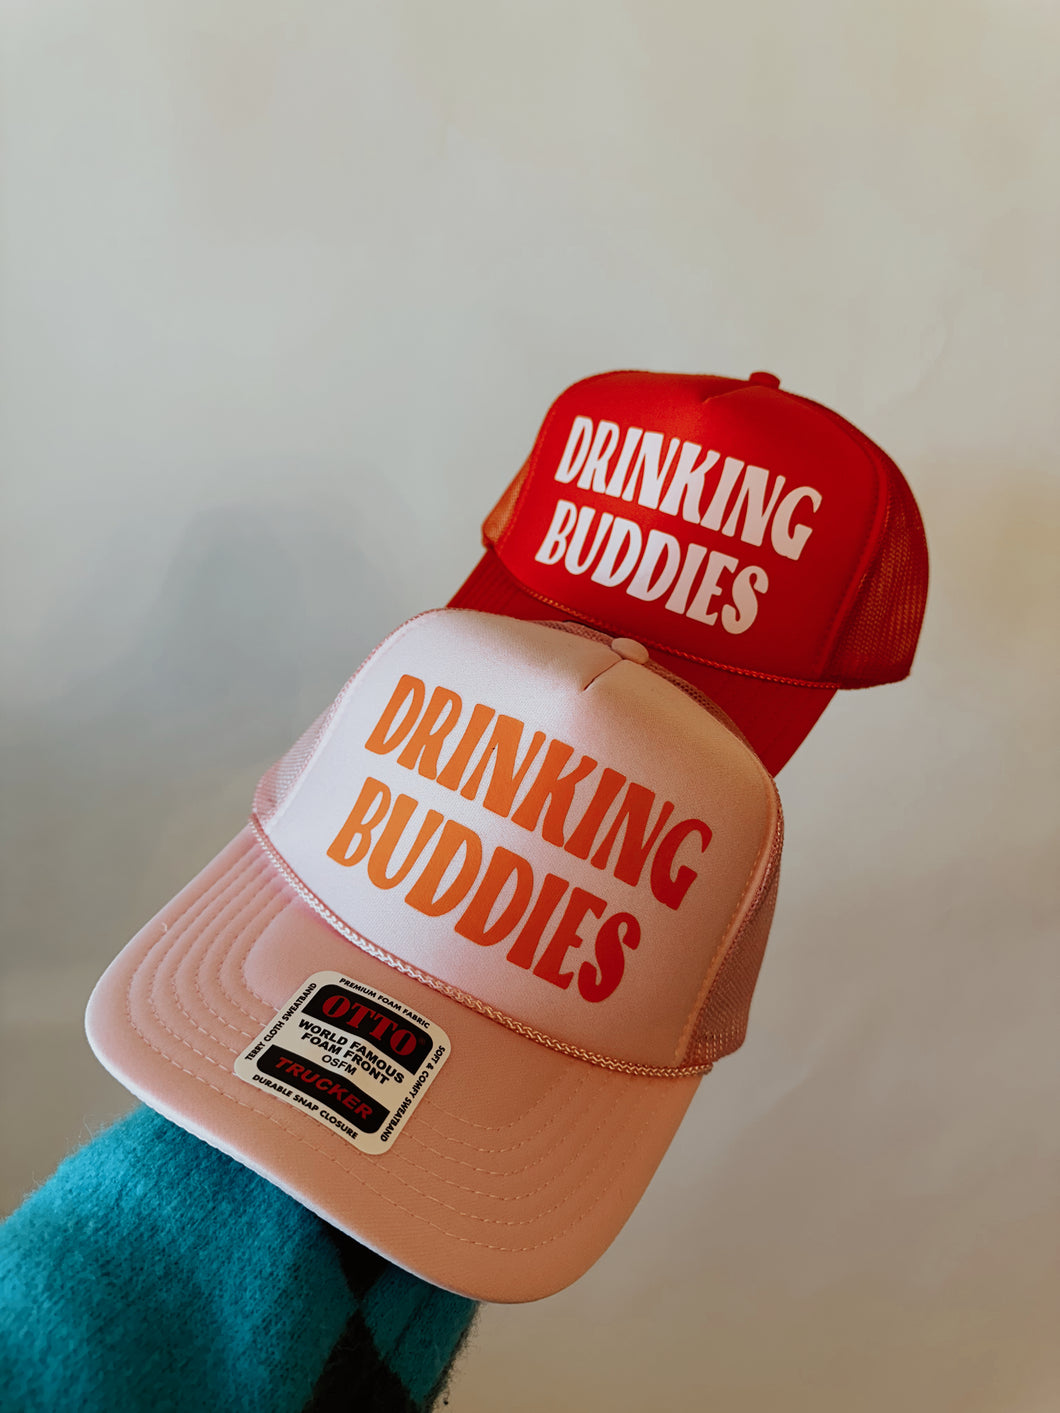 Drinking Buddies Trucker Hat